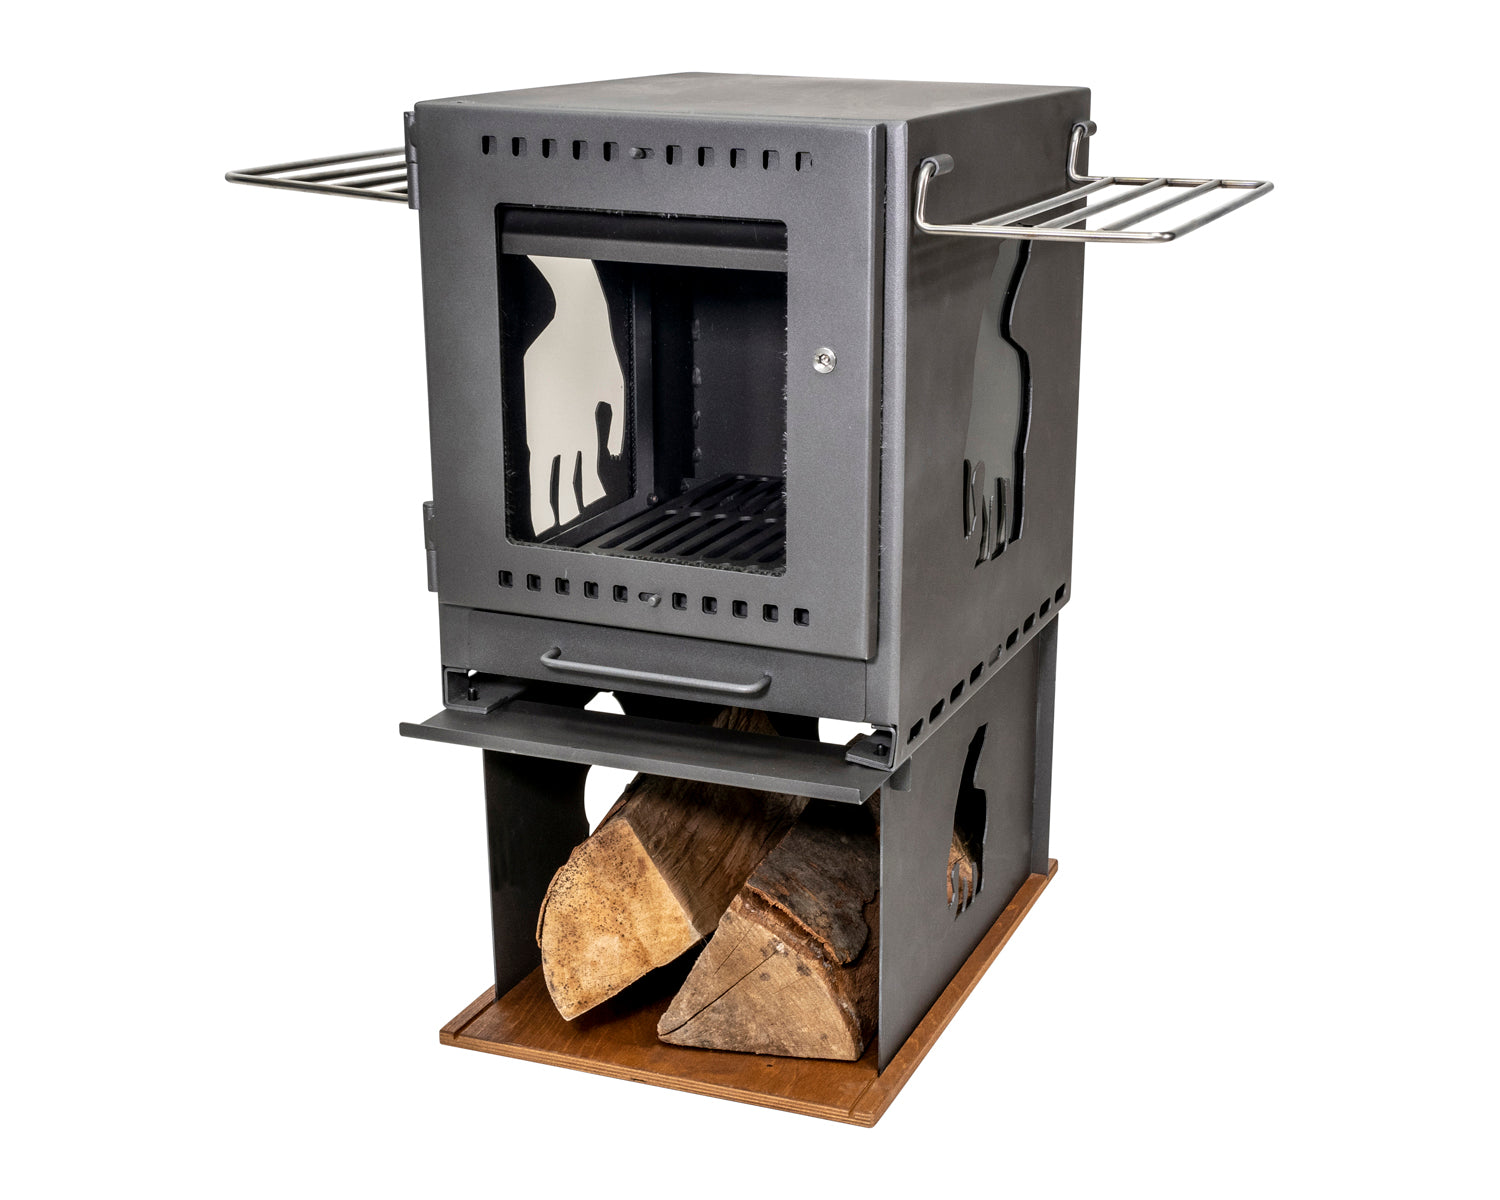 Torden wood burner set - Black